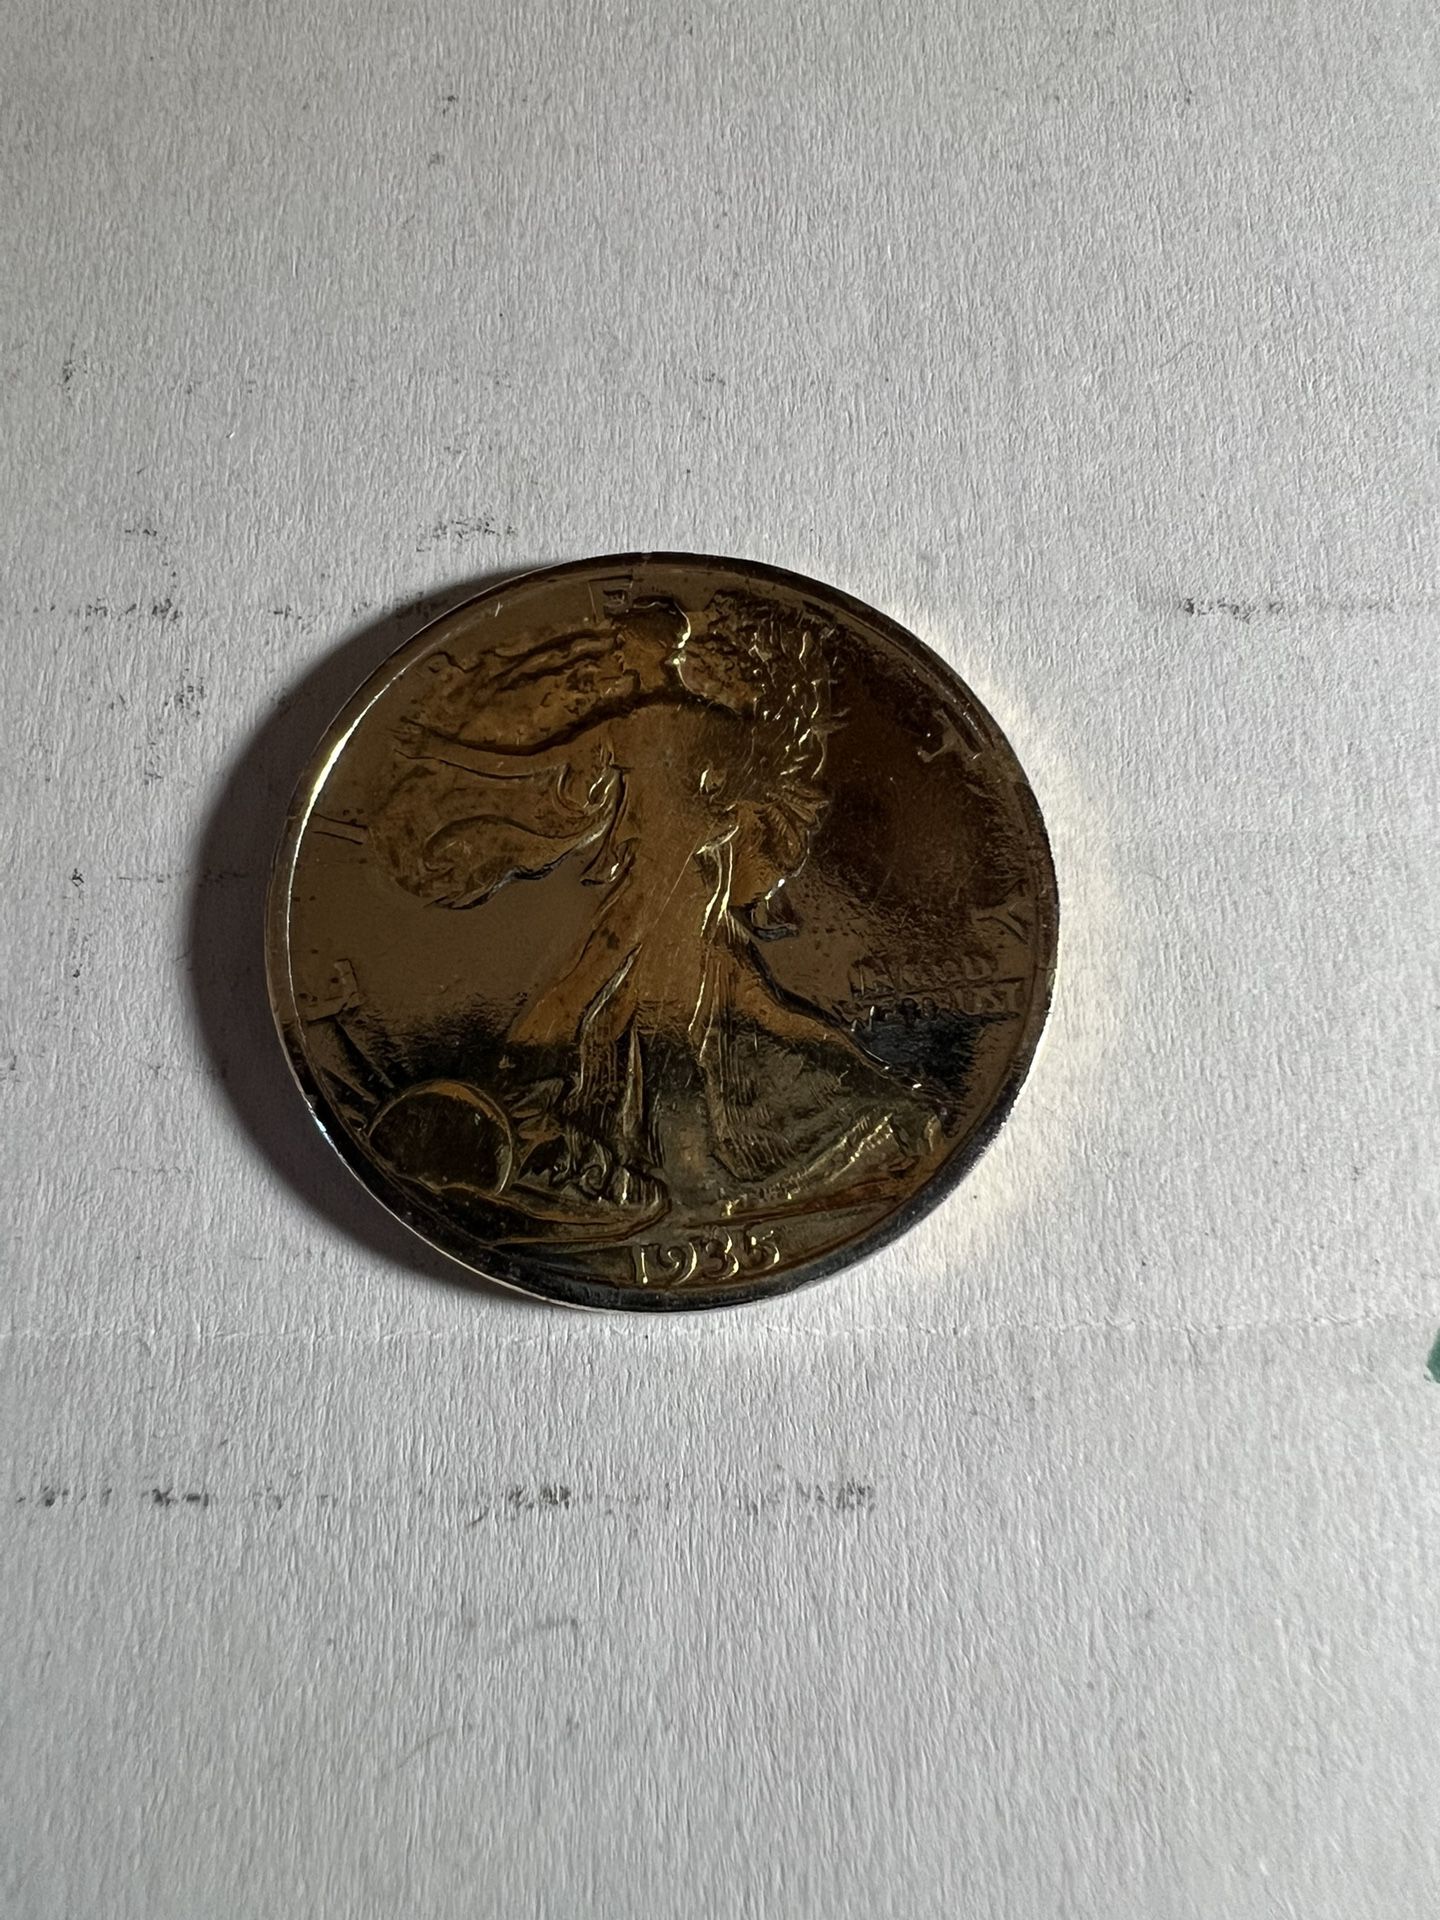 1935 silver half dollar 